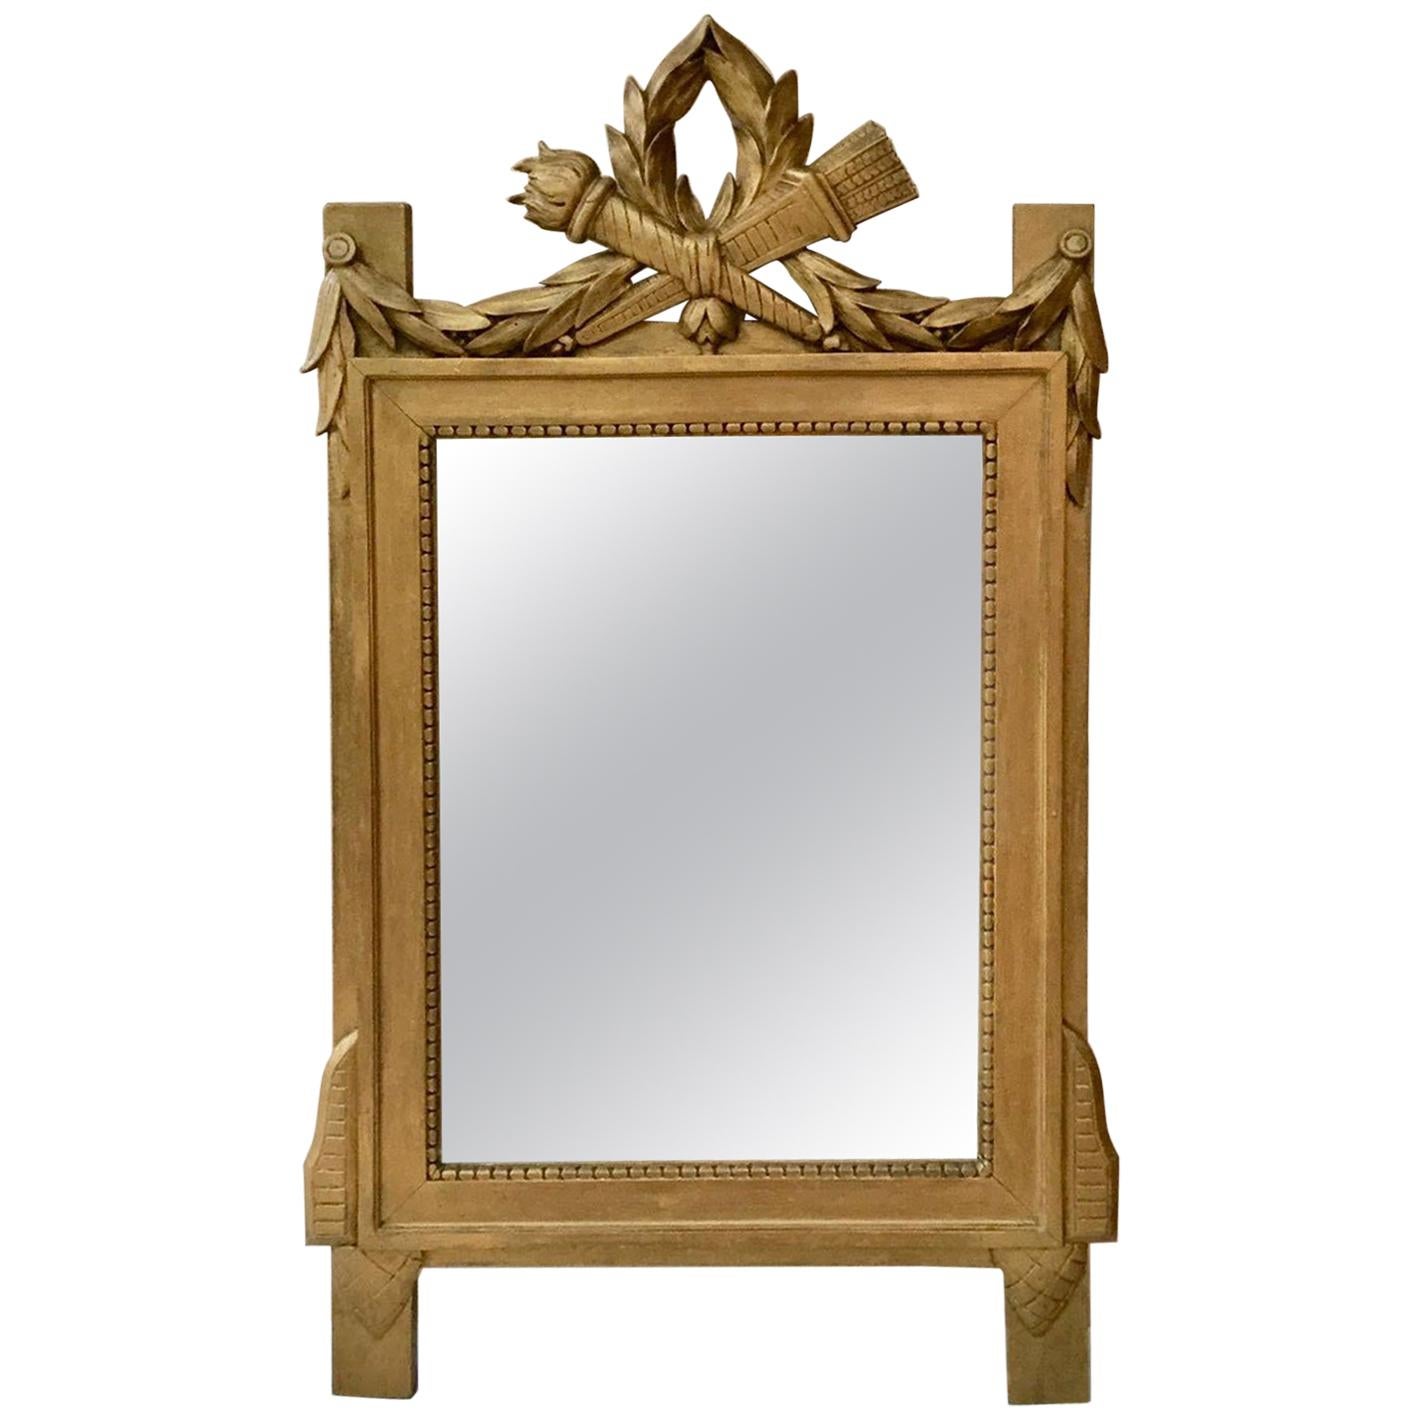 Miroir en bois doré de style Louis XVI, datant d'environ 1850